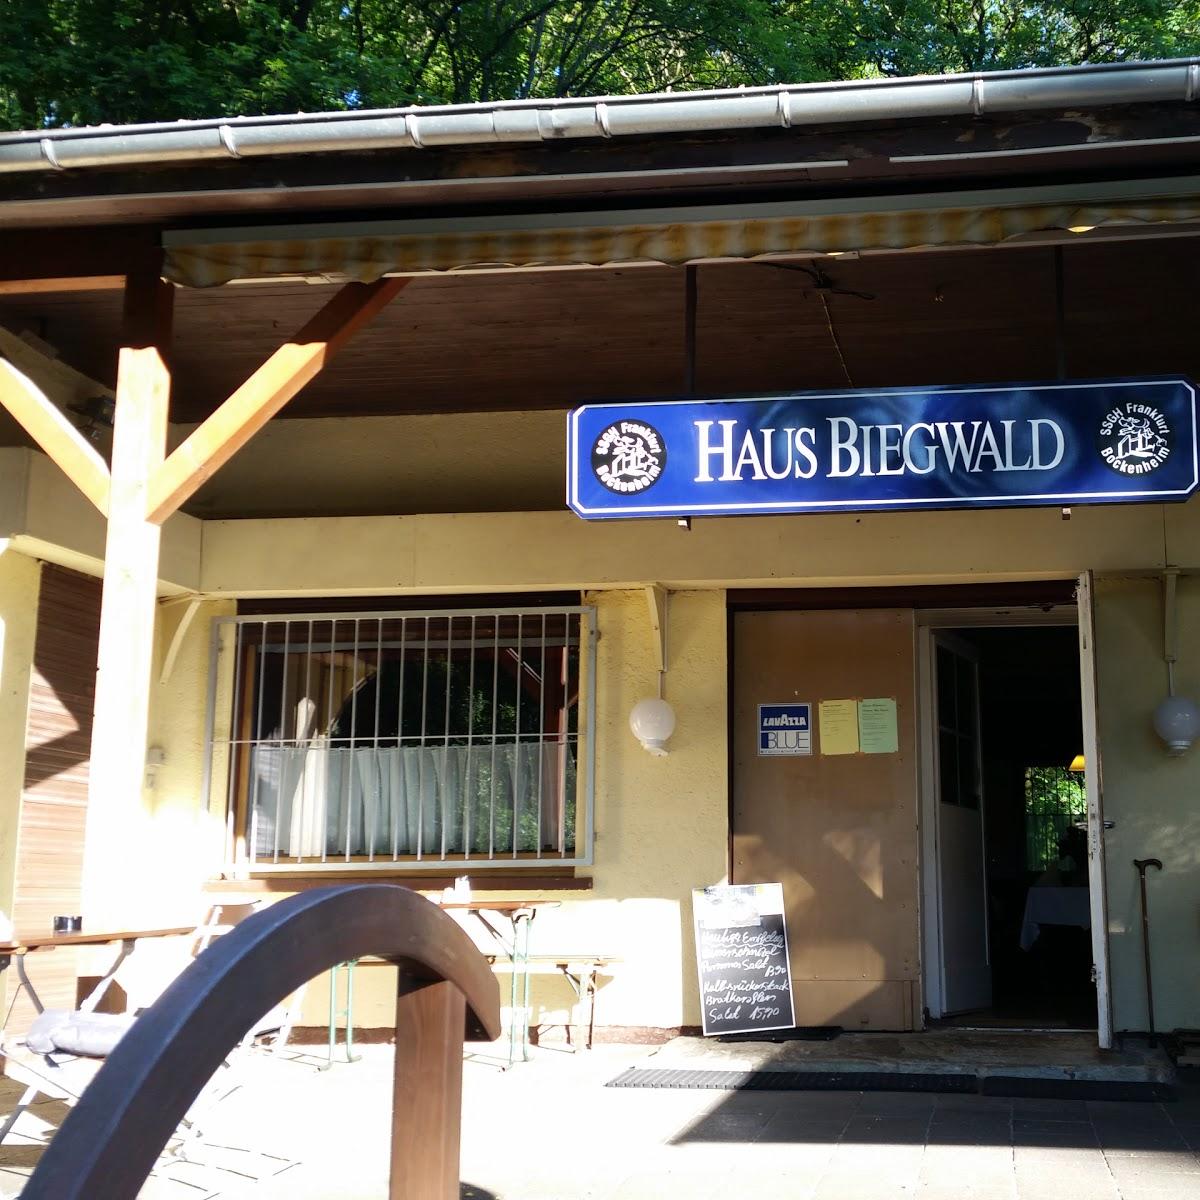 Restaurant "Haus Biegwald" in Frankfurt am Main